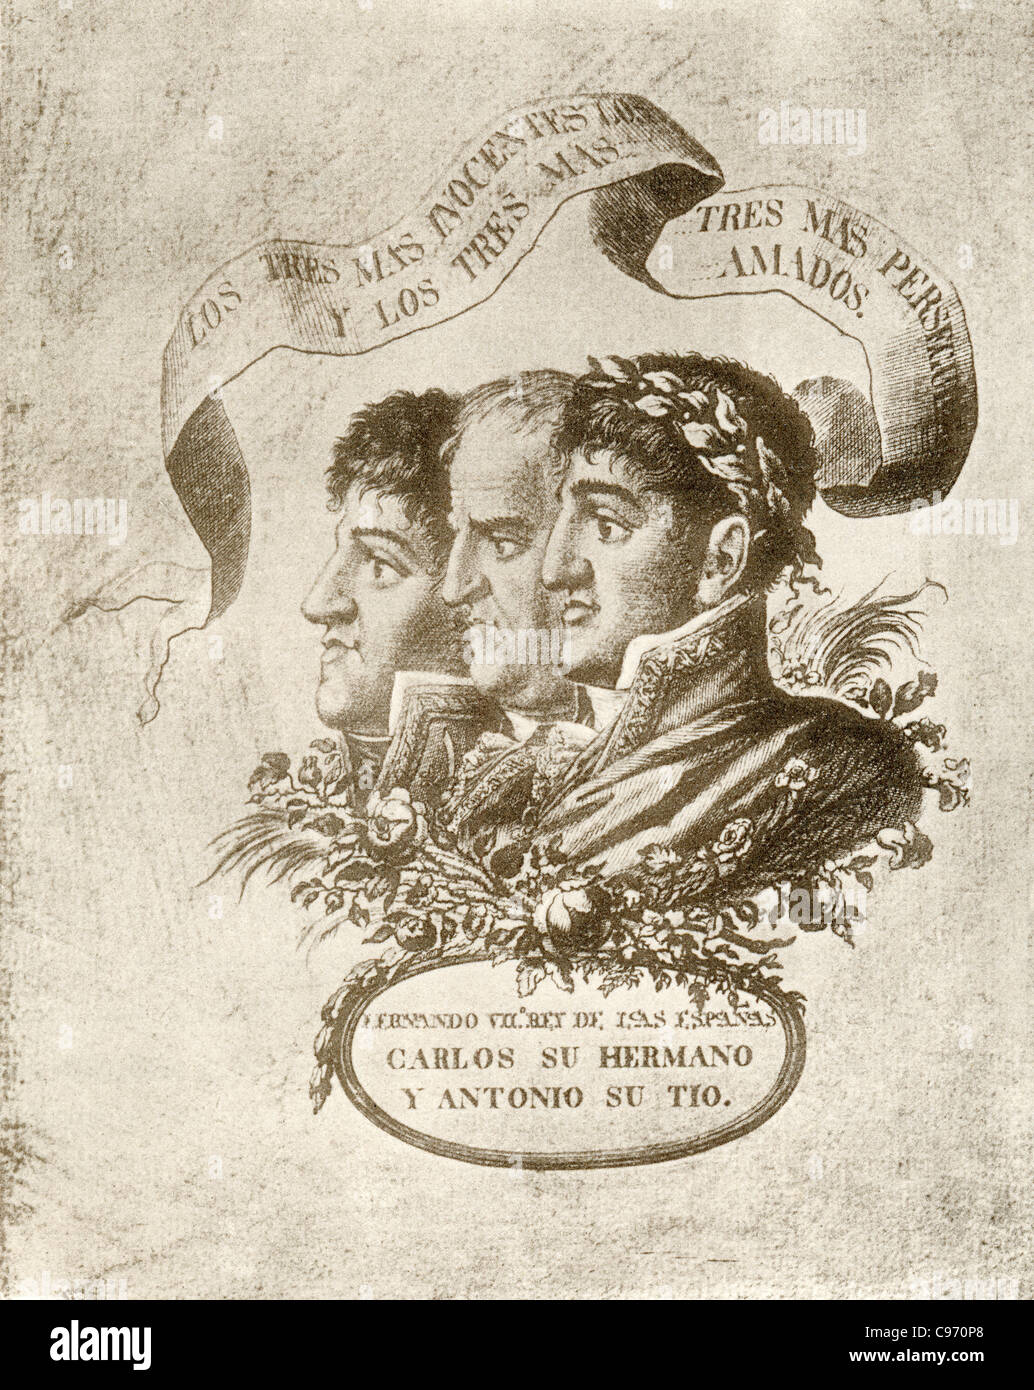 Ferdinand VII. von Borbón, Antonio Pascual de Borbón y wettiner und Carlos María Isidro Benito de Borbón y Borbón-Parma, Stockfoto